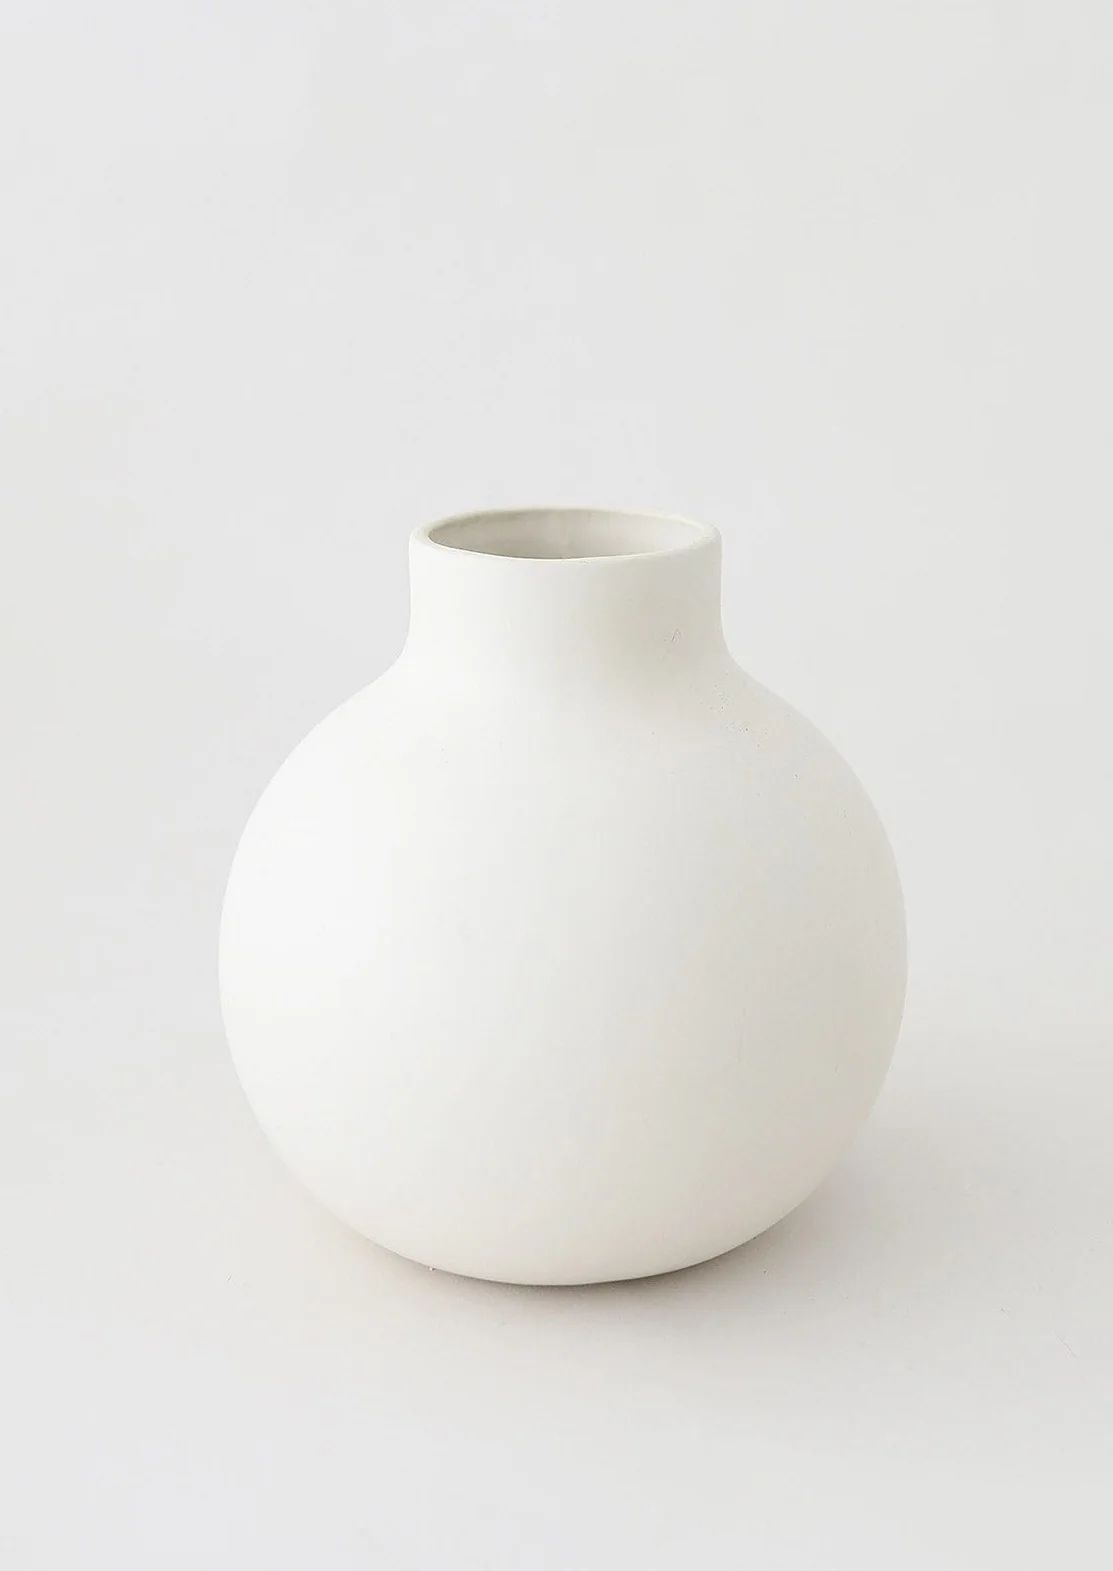 Ceramic Round Flower Vase at Afloral | Afloral